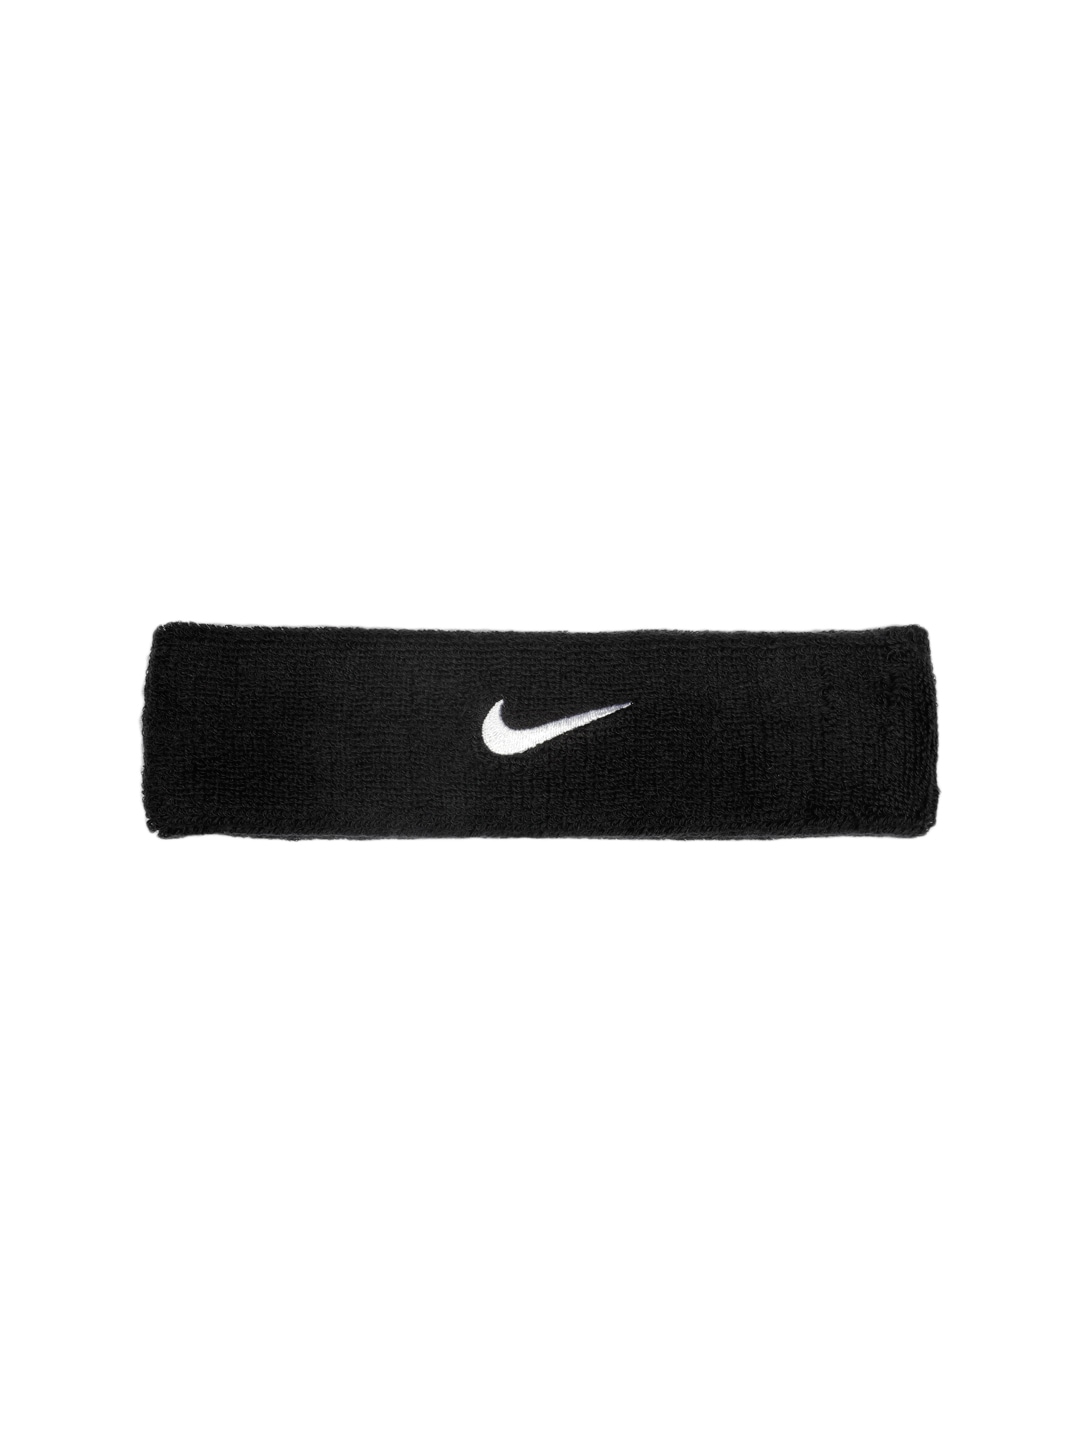 Nike Unisex Black Headband